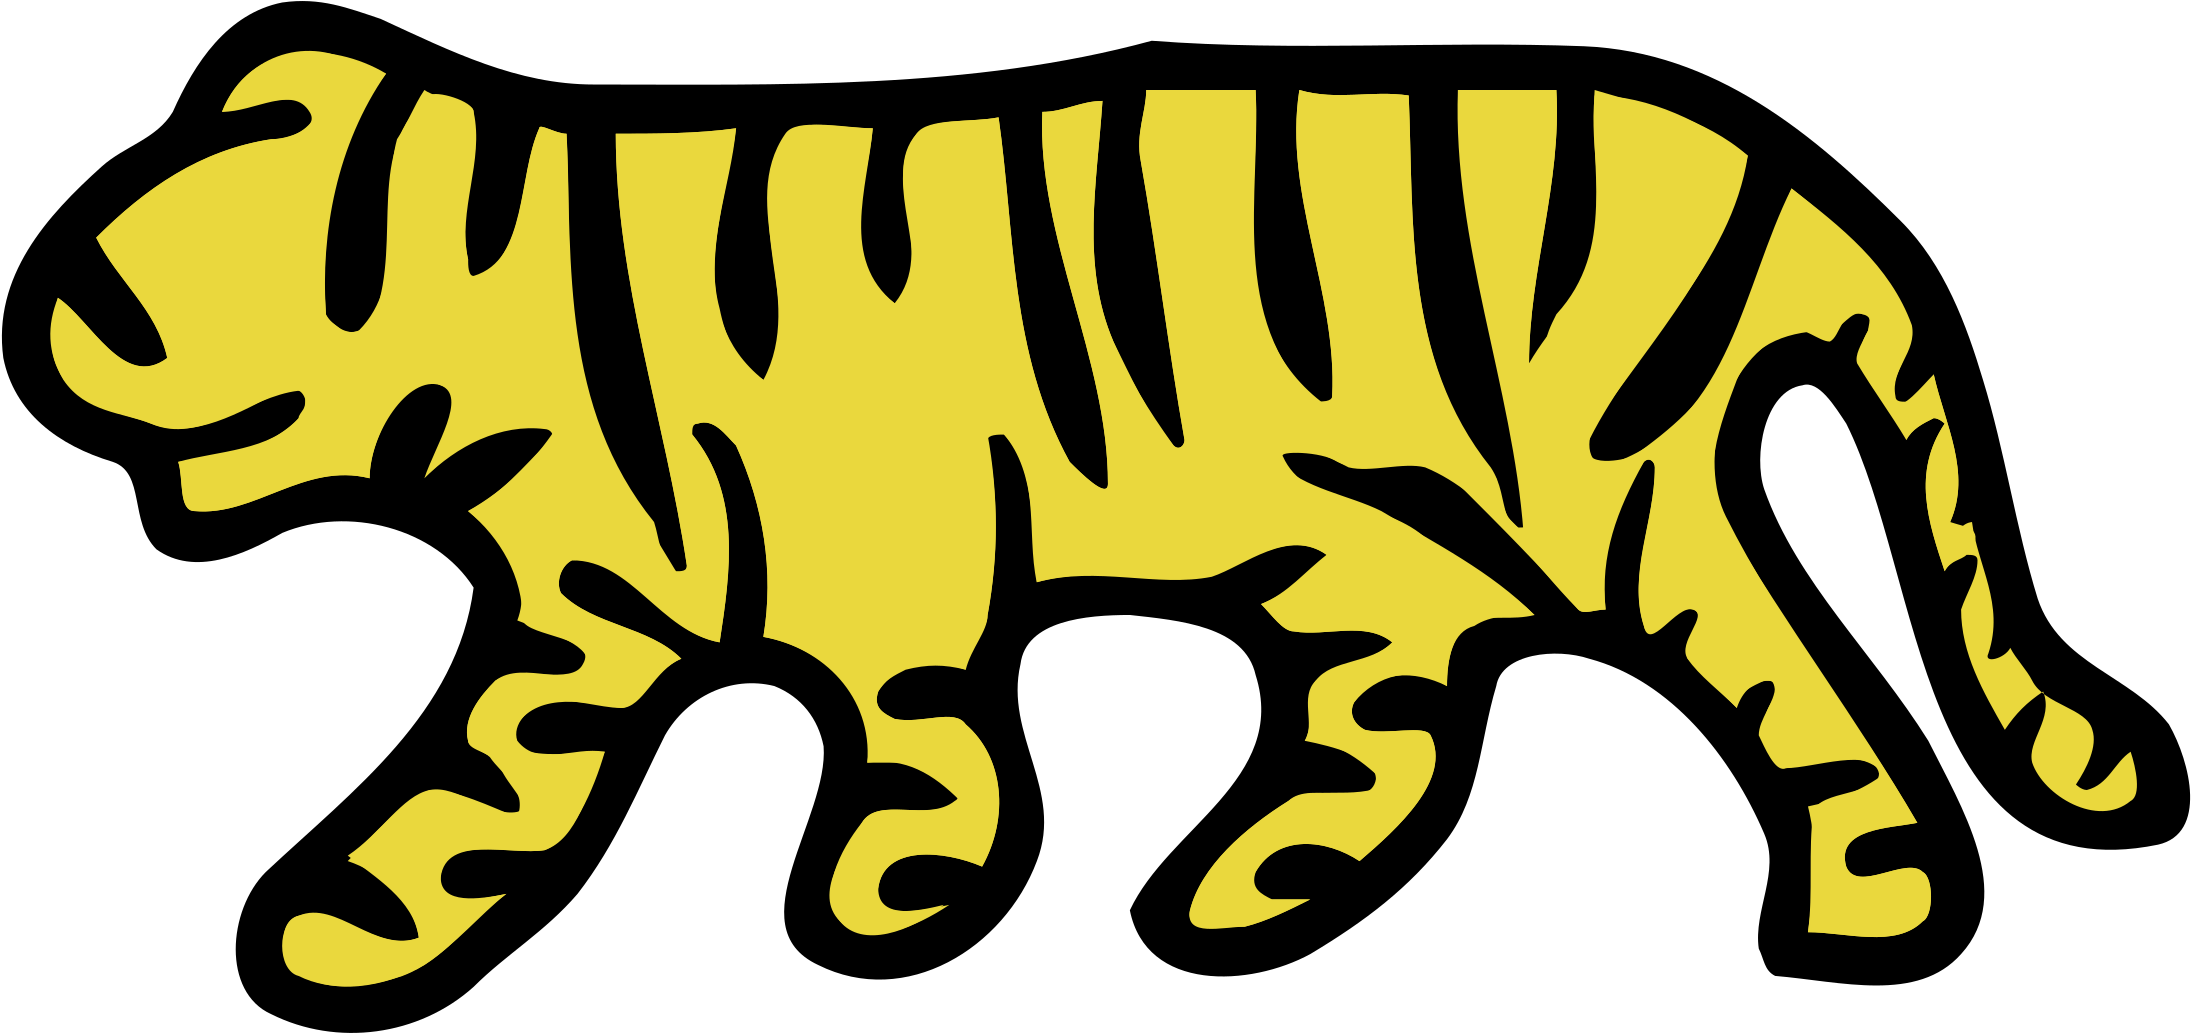 Hamilton Tigers Logo Png Transparent - Hamilton Tiger Nhl (2400x2400)